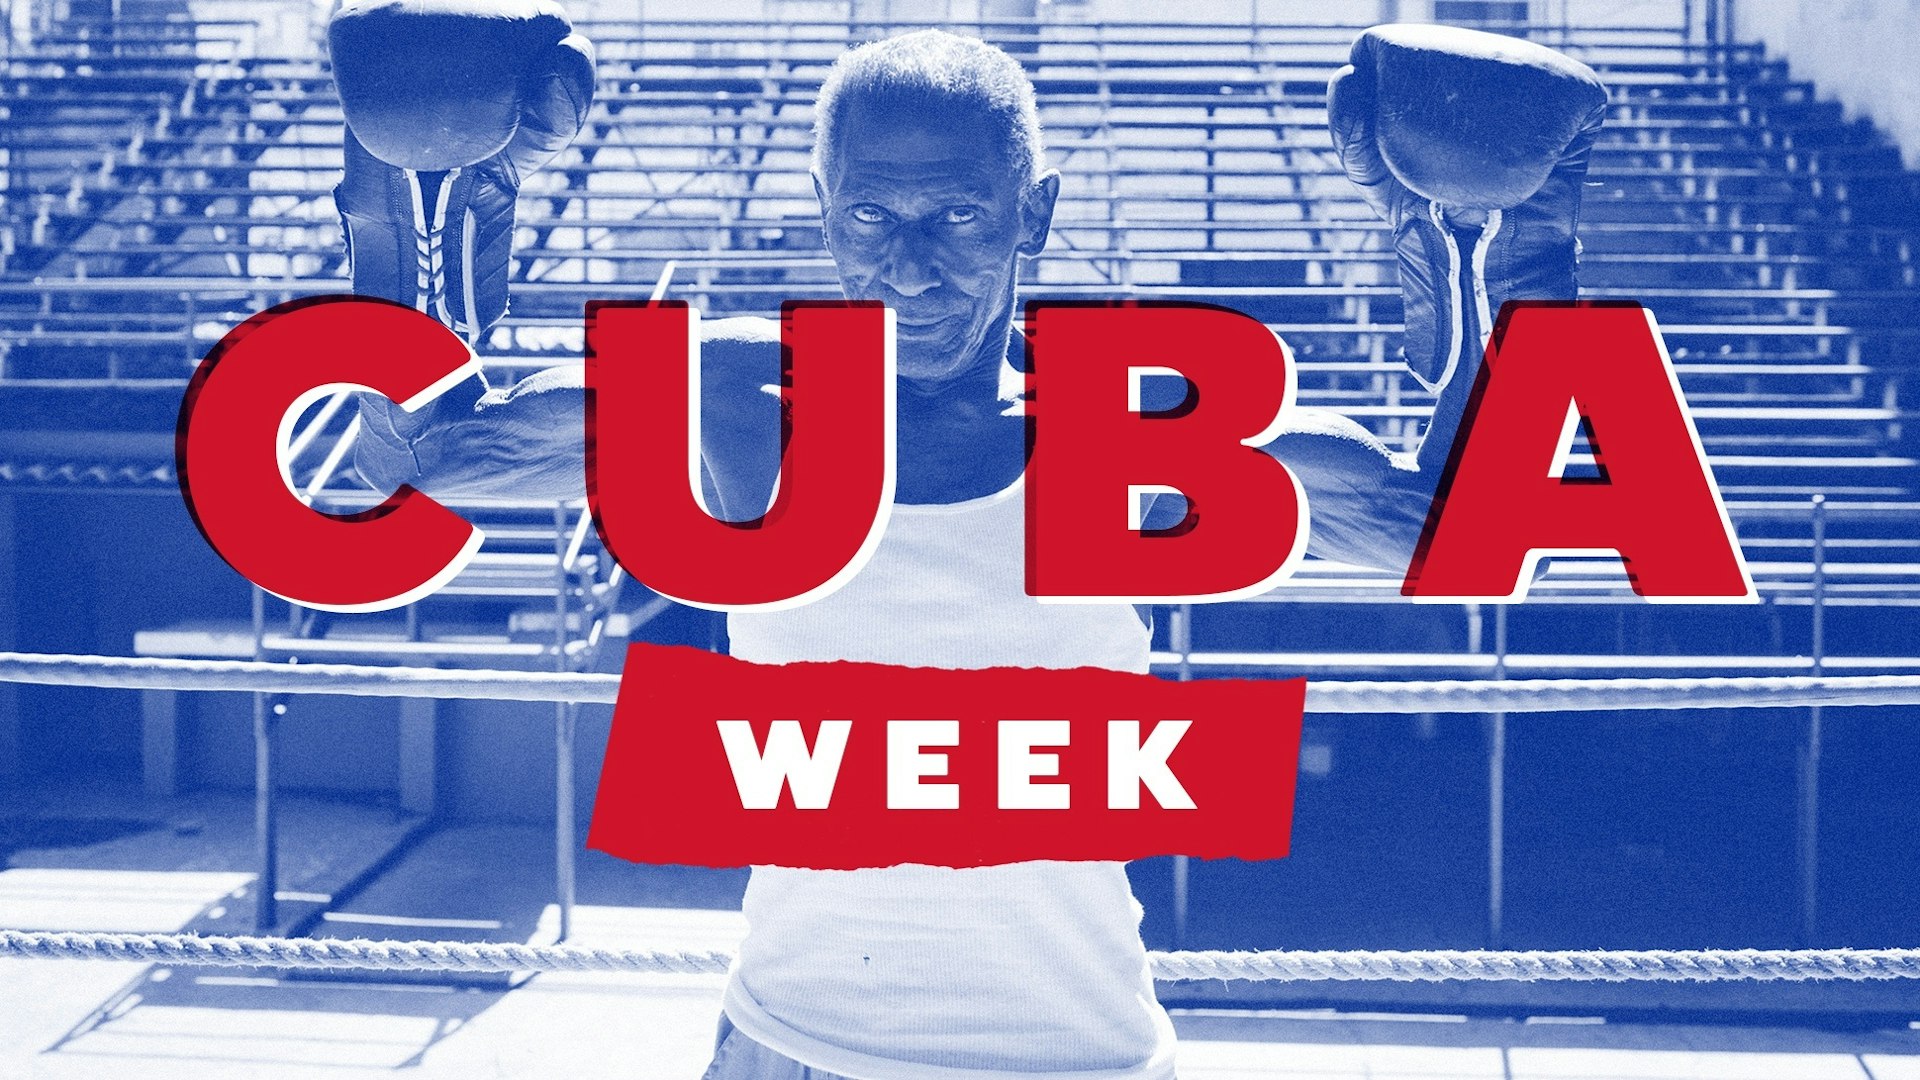 It's Cuba Week at Huck